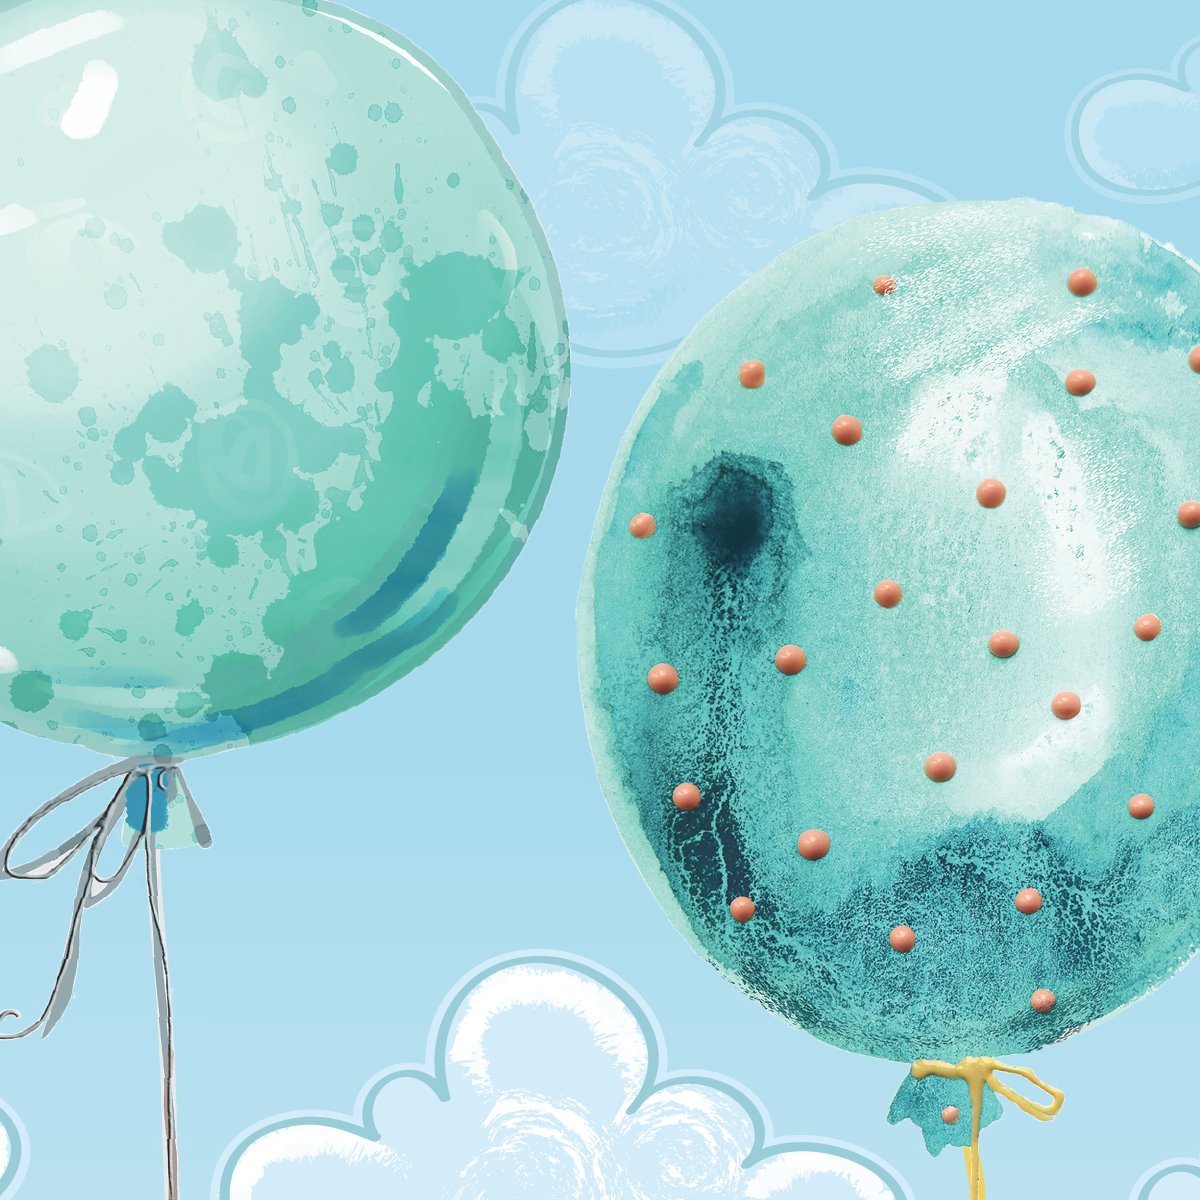 Naklejki na ścianę chmurki i latające balony#kolor_mietowy